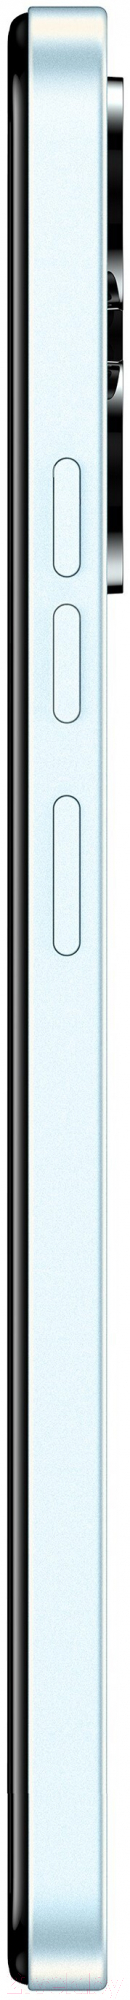 Смартфон Tecno Spark 10 Pro 8GB/256GB / KI7